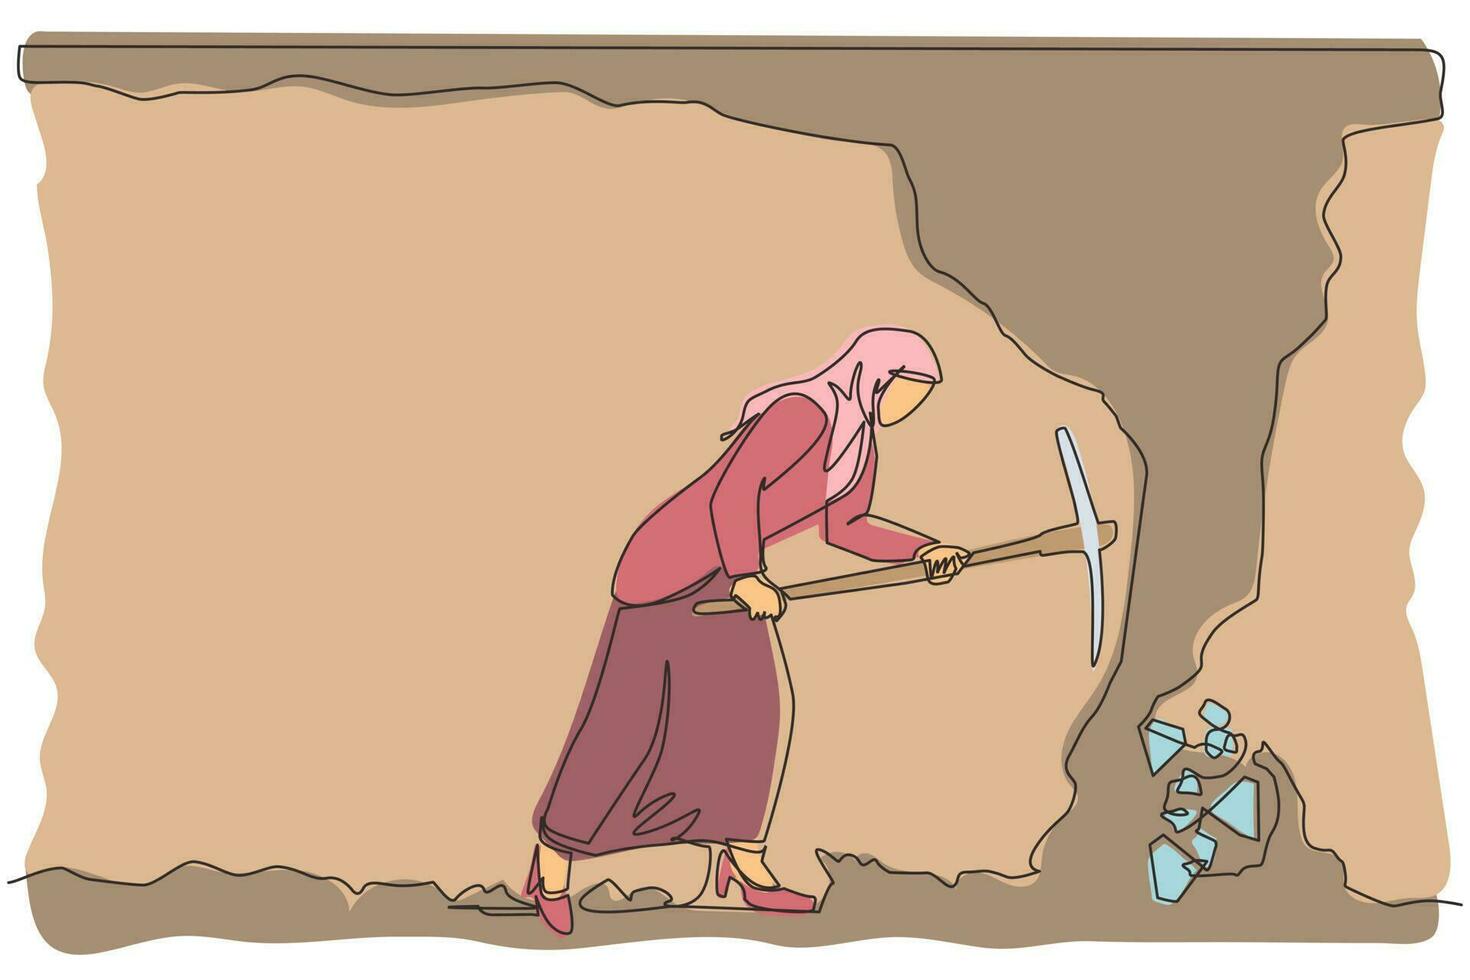 einzelne durchgehende strichzeichnung arabische geschäftsfrau, die mit spitzhacke gräbt, um diamanten zu bekommen. Arbeiter, der in einem unterirdischen Tunnel nach Diamanten gräbt und abbaut. eine linie zeichnen grafikdesign-vektorillustration vektor